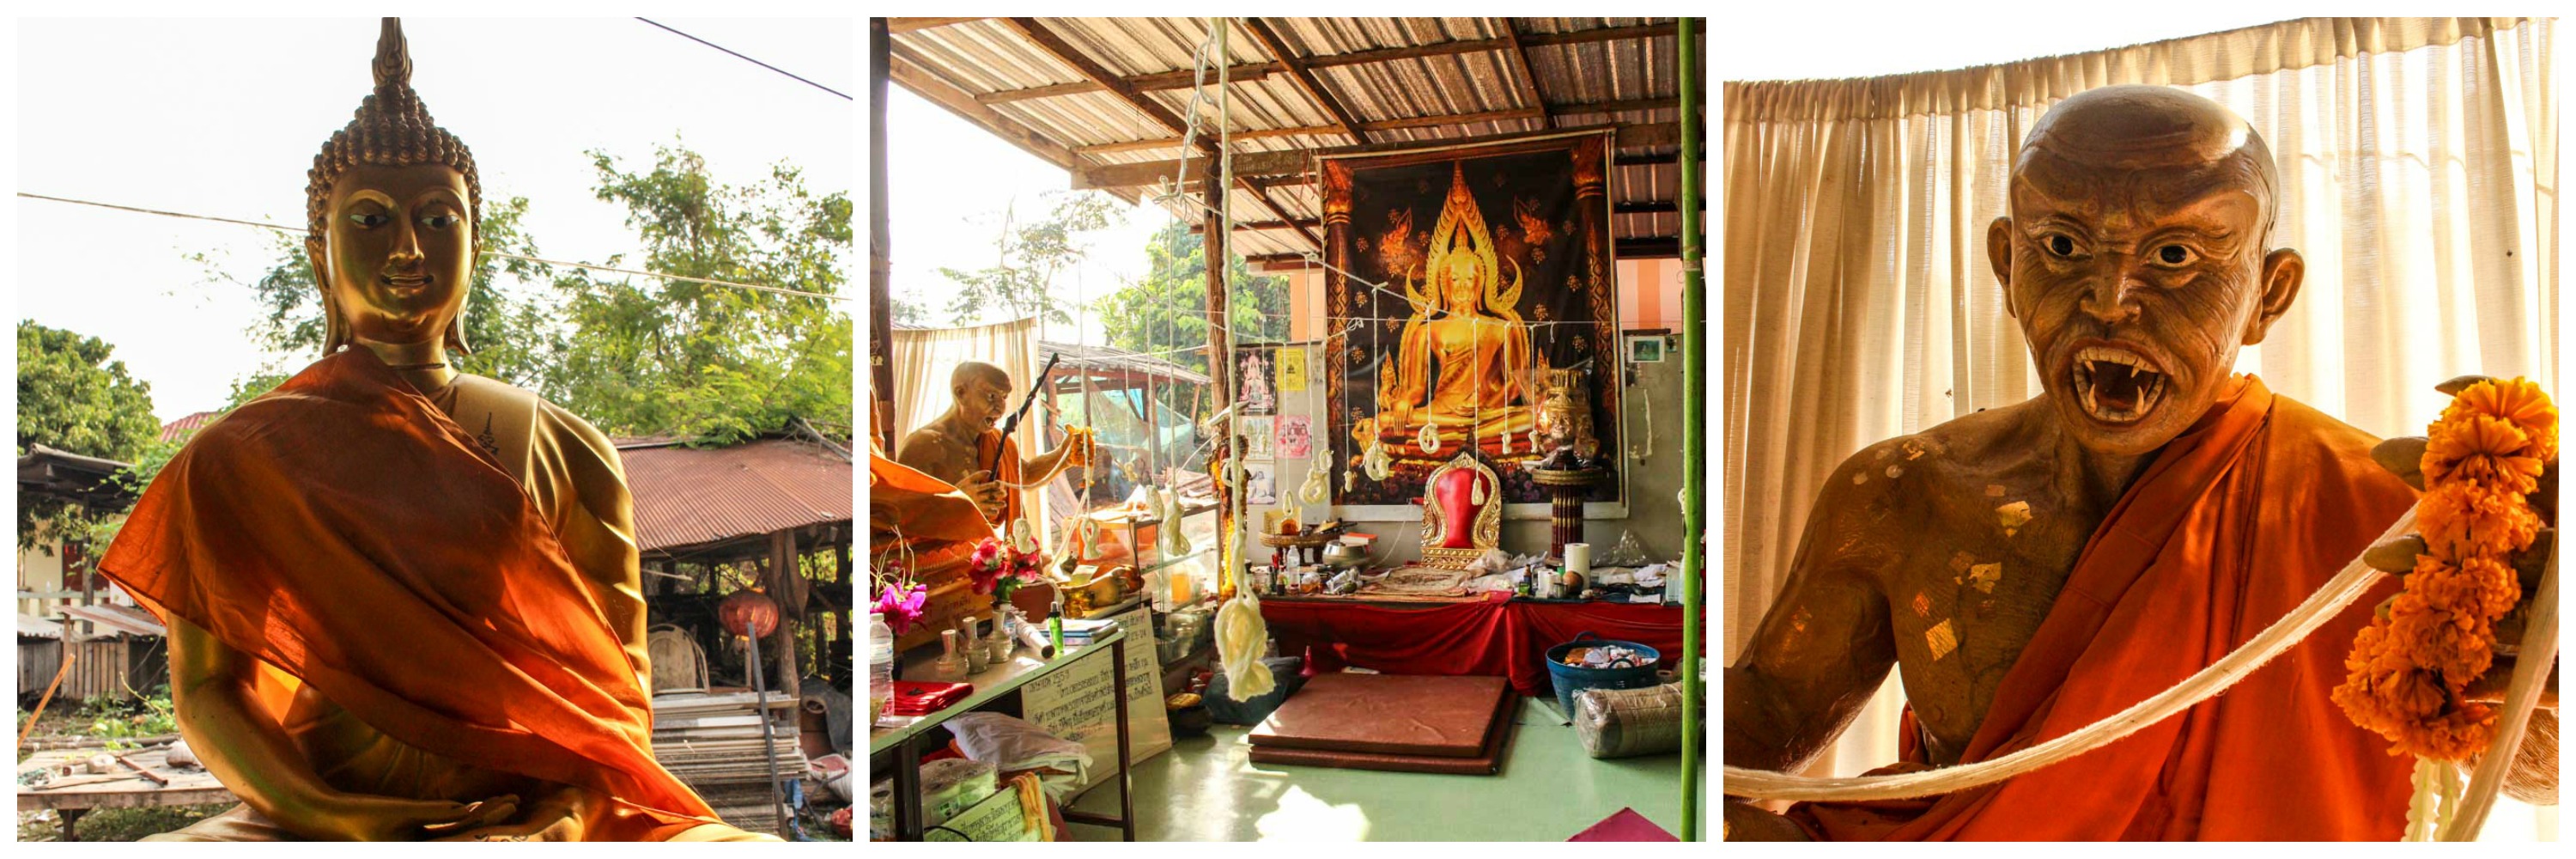 O Templo Budista onde a Sak Yant é feita em Chiang Mai, Tailândia